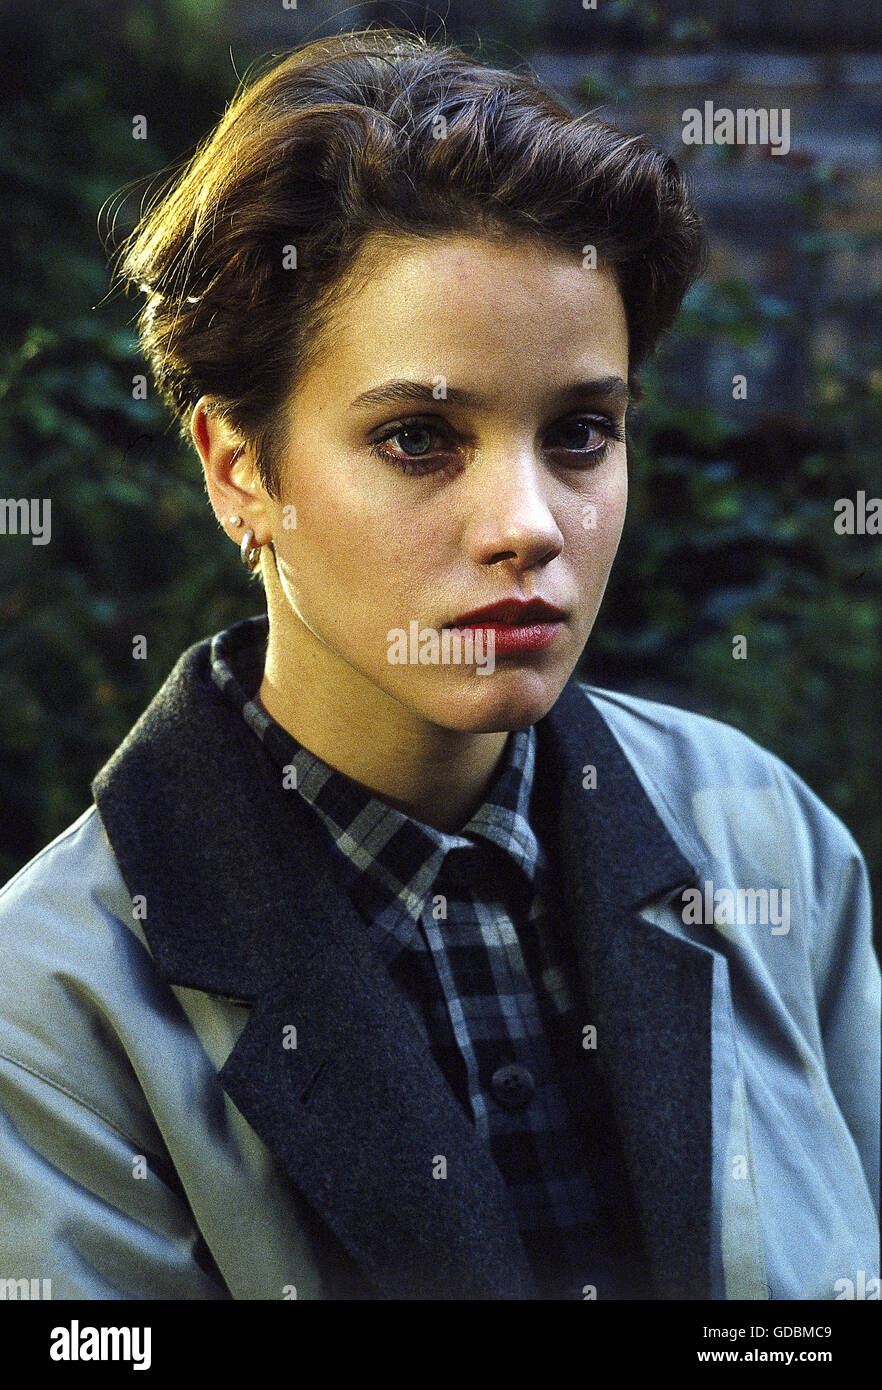 Baumeister, Muriel, * 24.1.1972, l'actrice allemande, portrait, circa 1995, Banque D'Images